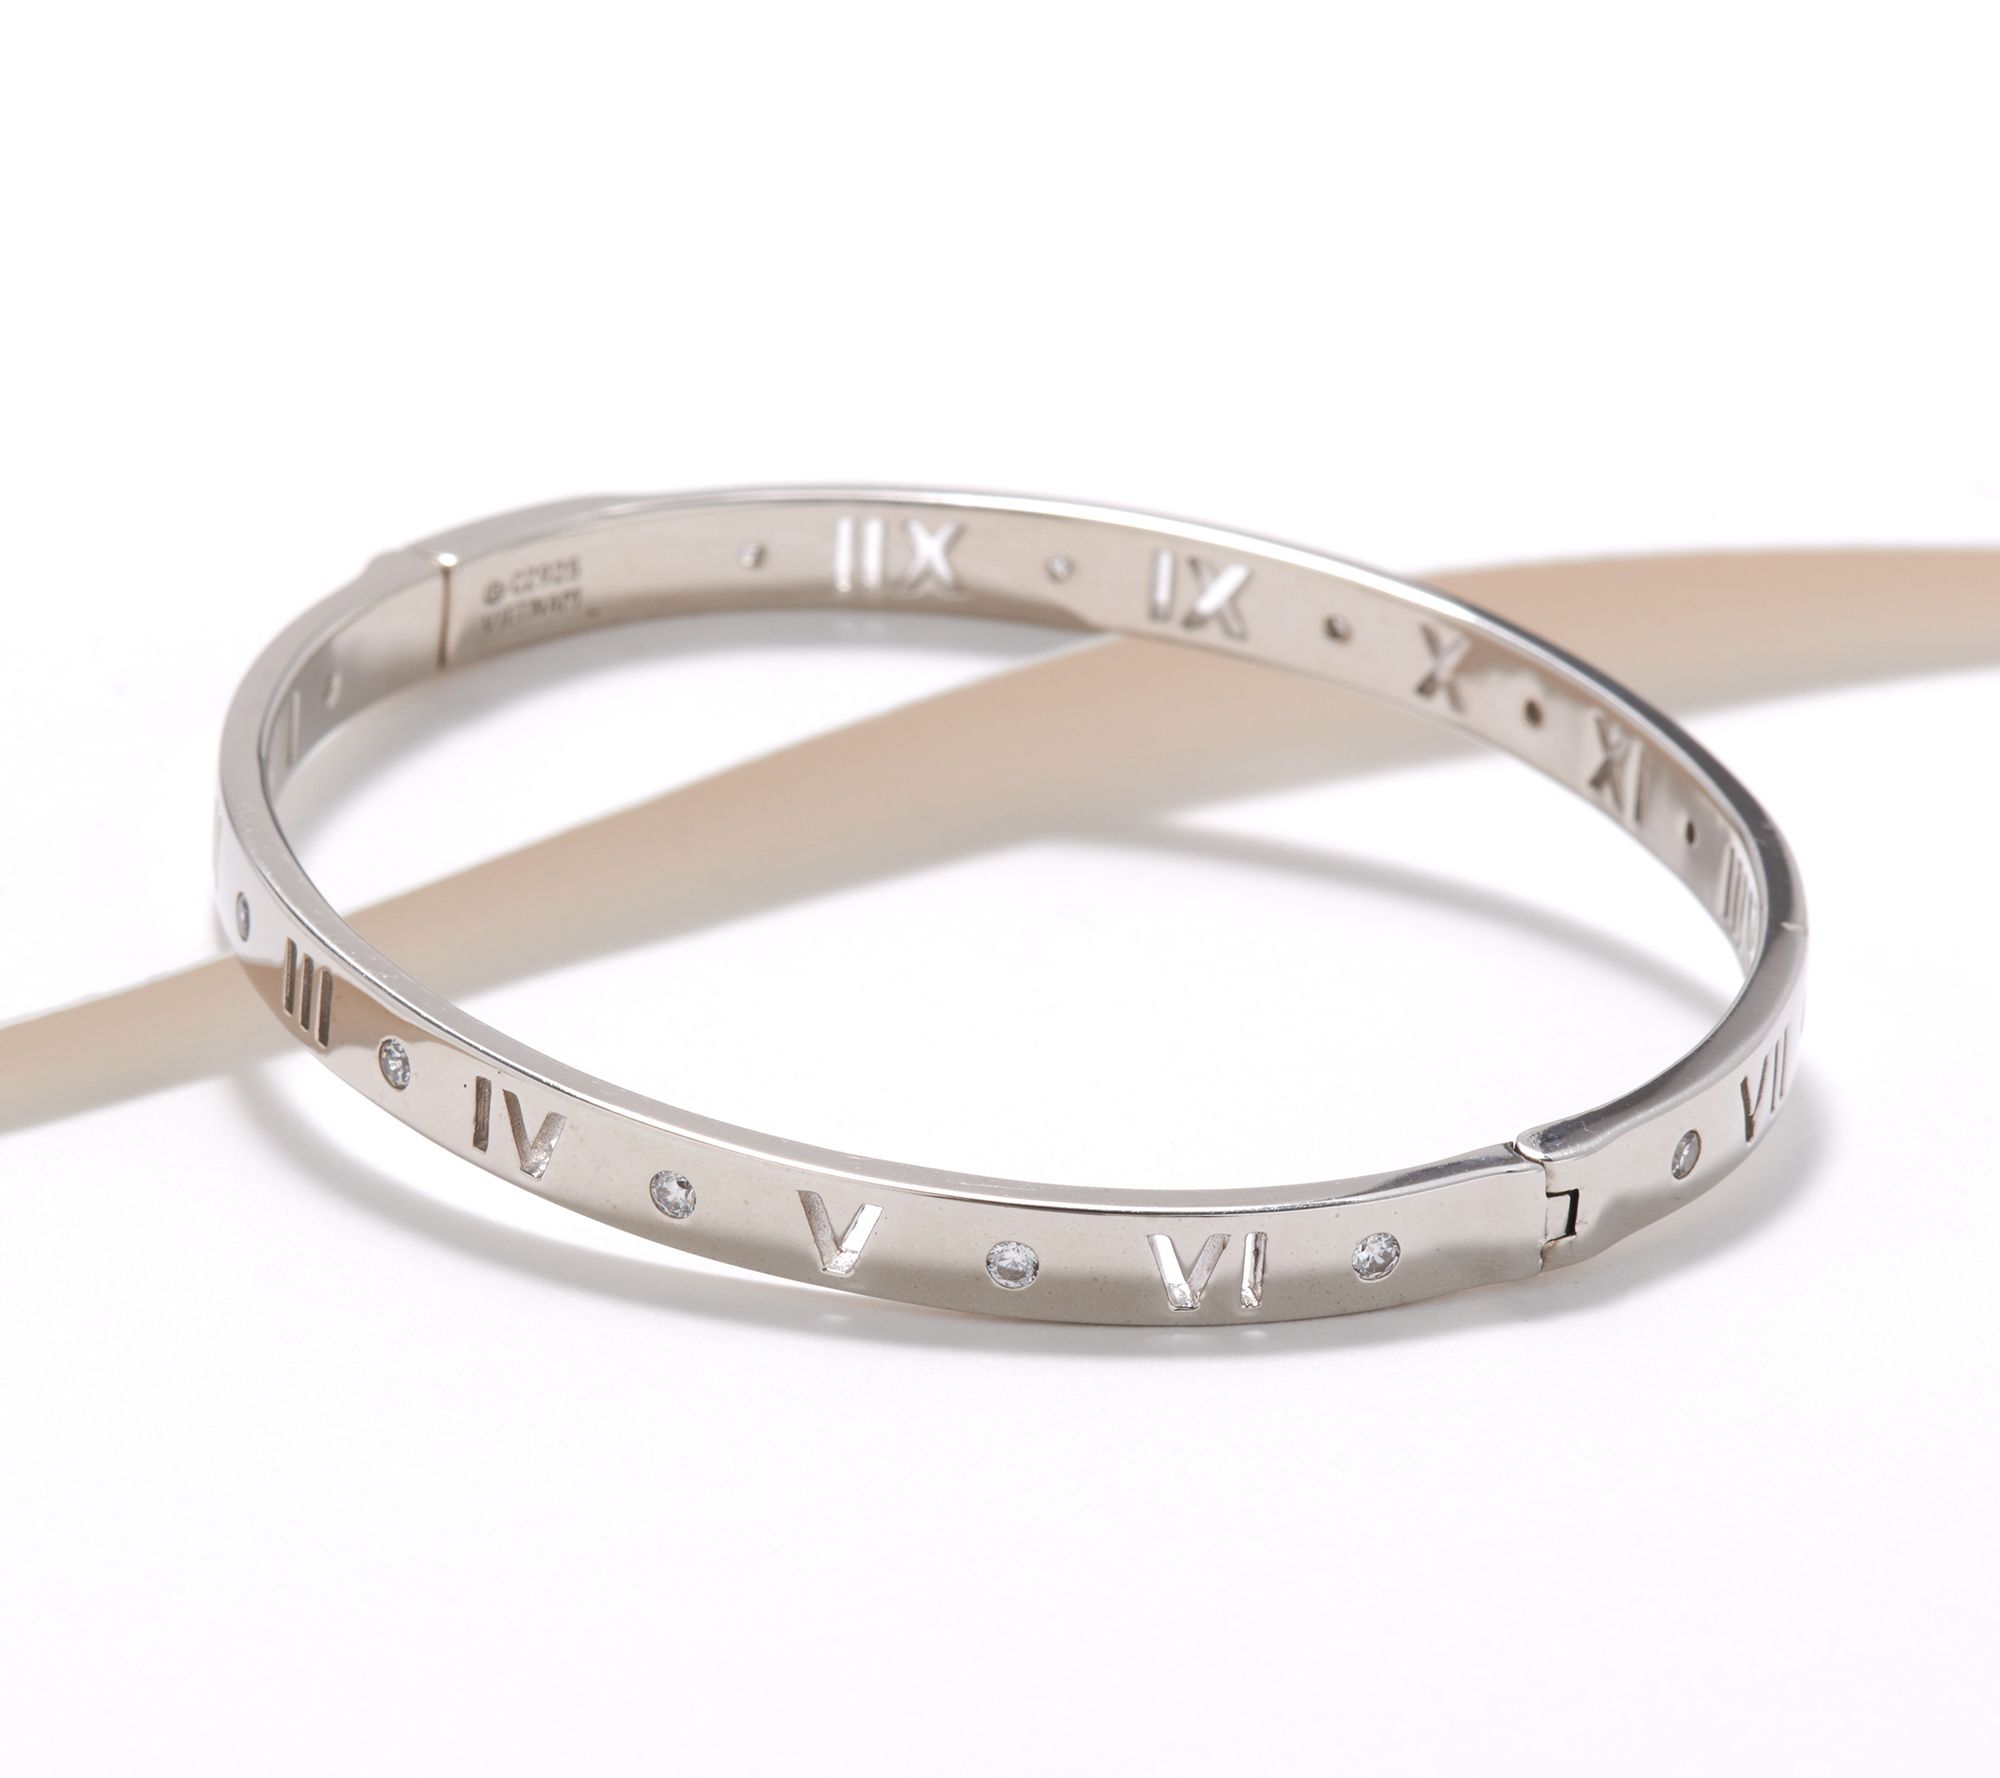 Classic Trend Ancient Roman Numeral Bracelet for Men Women